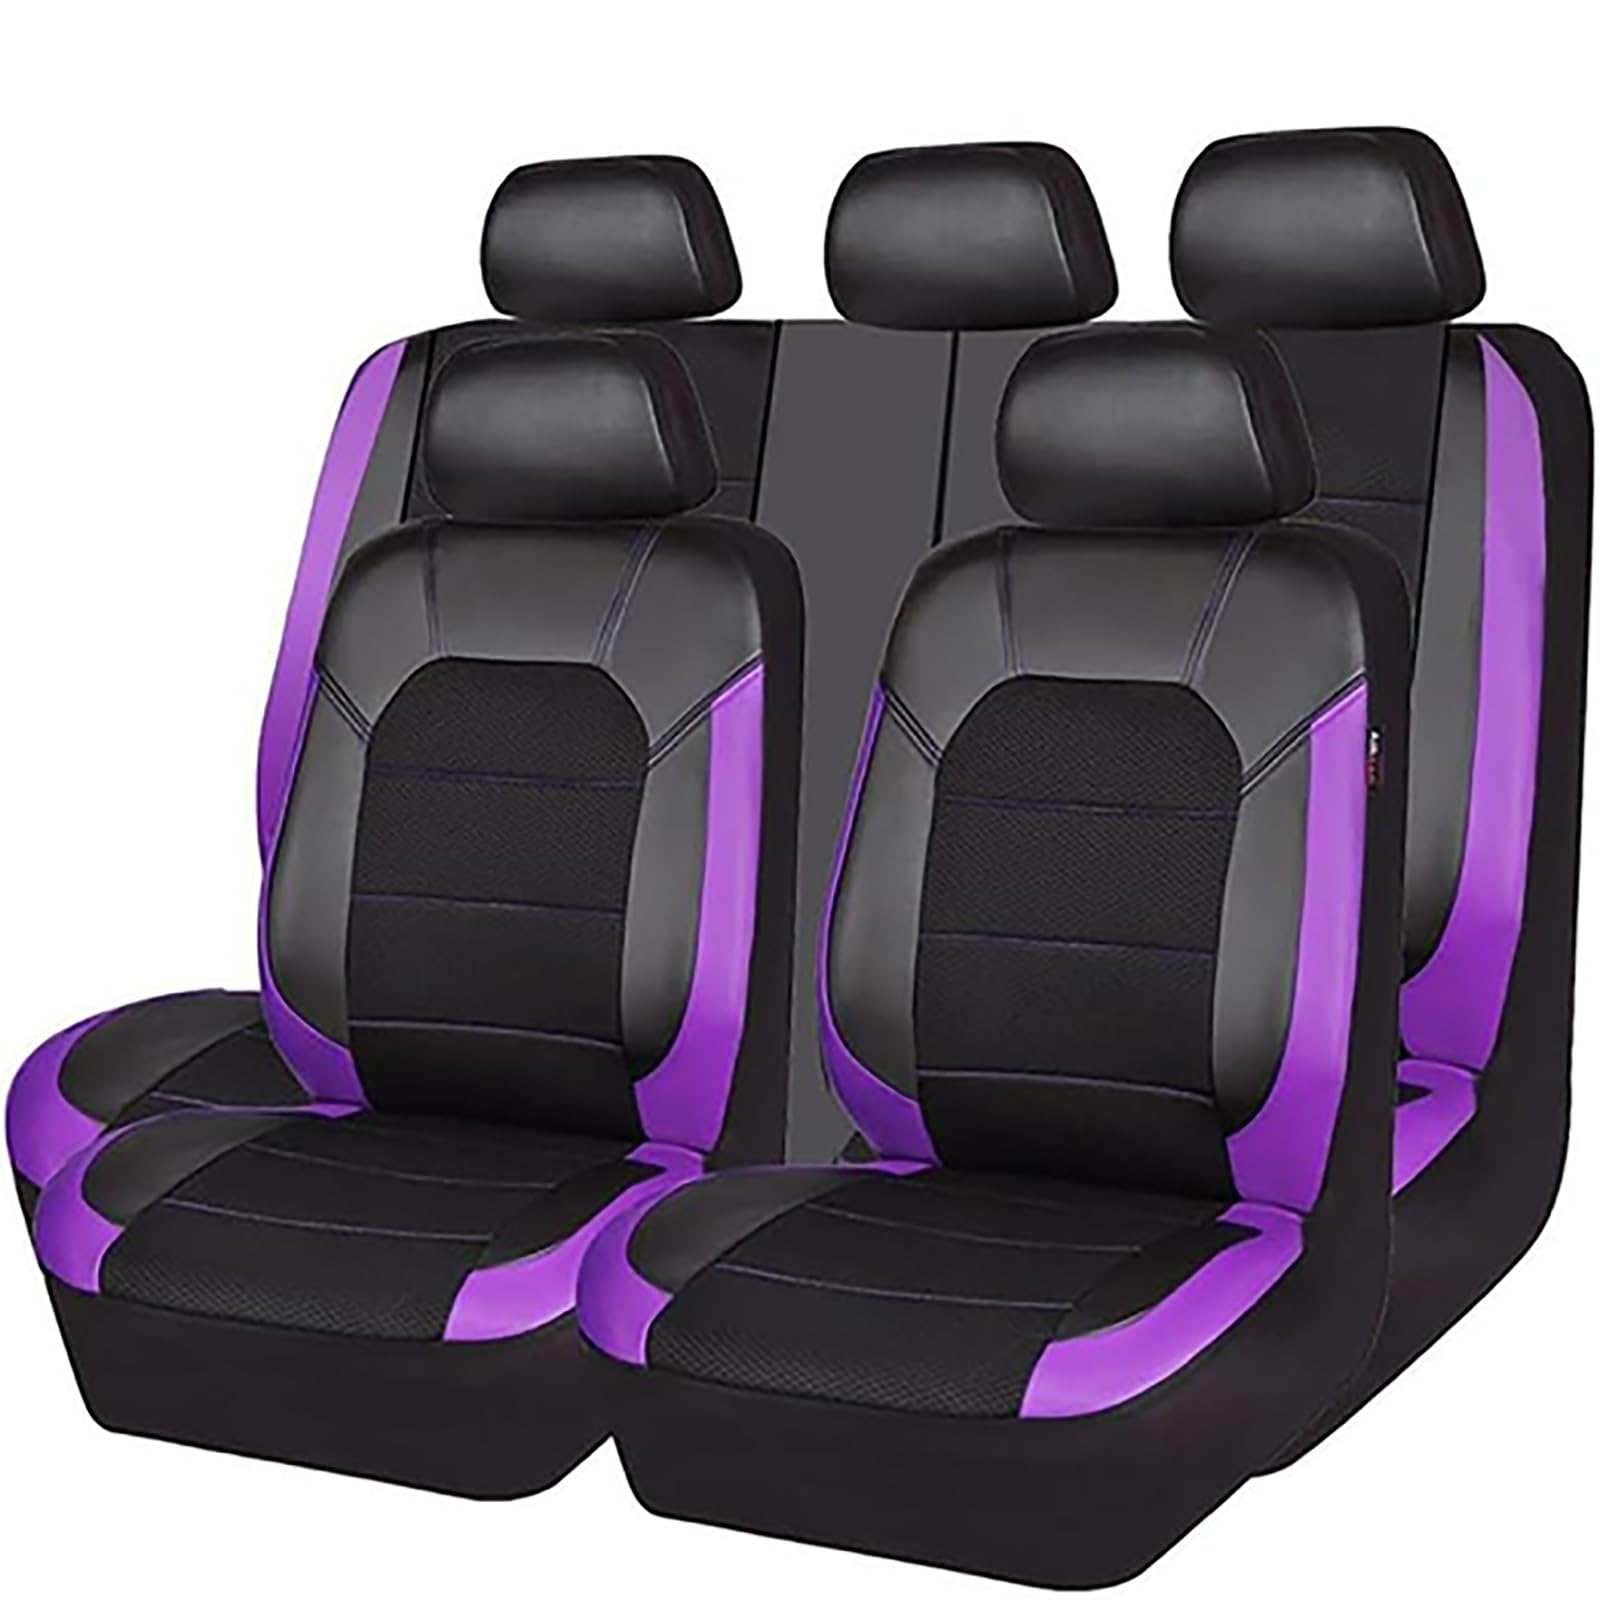 EYHQKRTR Auto Leder Sitzkissen Für Hyundai Kona/Encino 2018-2023, 5 Sitzer Full Set SitzbezüGe Schonbezug Vorne Rückbank Sitzschutz Compatible Airbag Innenraum Zubehör,E/Purple von EYHQKRTR